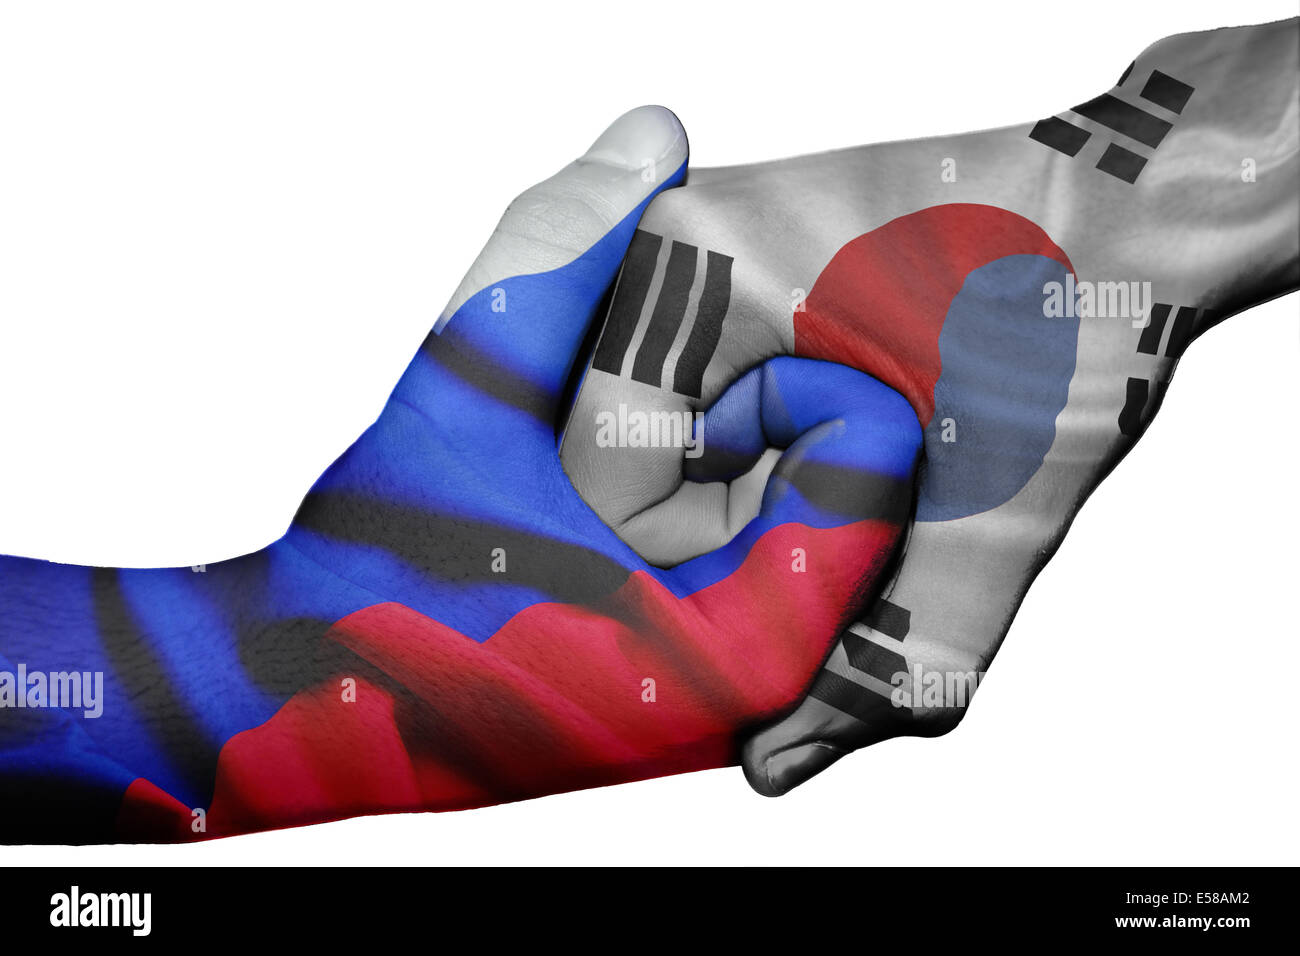 Handshake diplomatiche tra paesi: bandiere della Russia e Corea del Sud sovradipinta le due mani Foto Stock